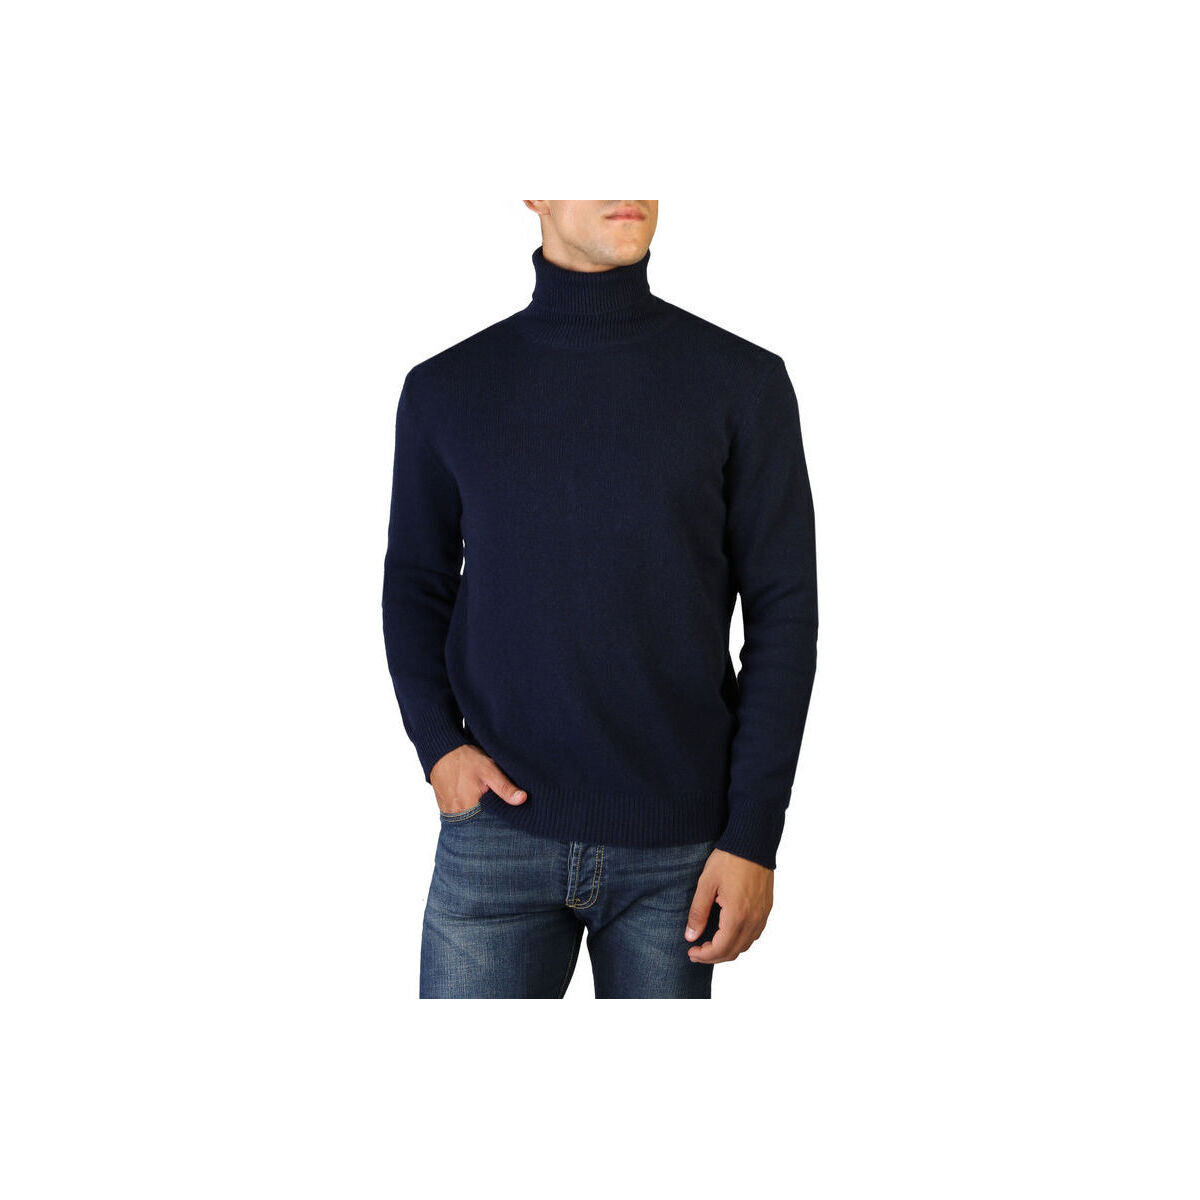 Textil Muži Svetry 100% Cashmere Jersey roll neck Modrá